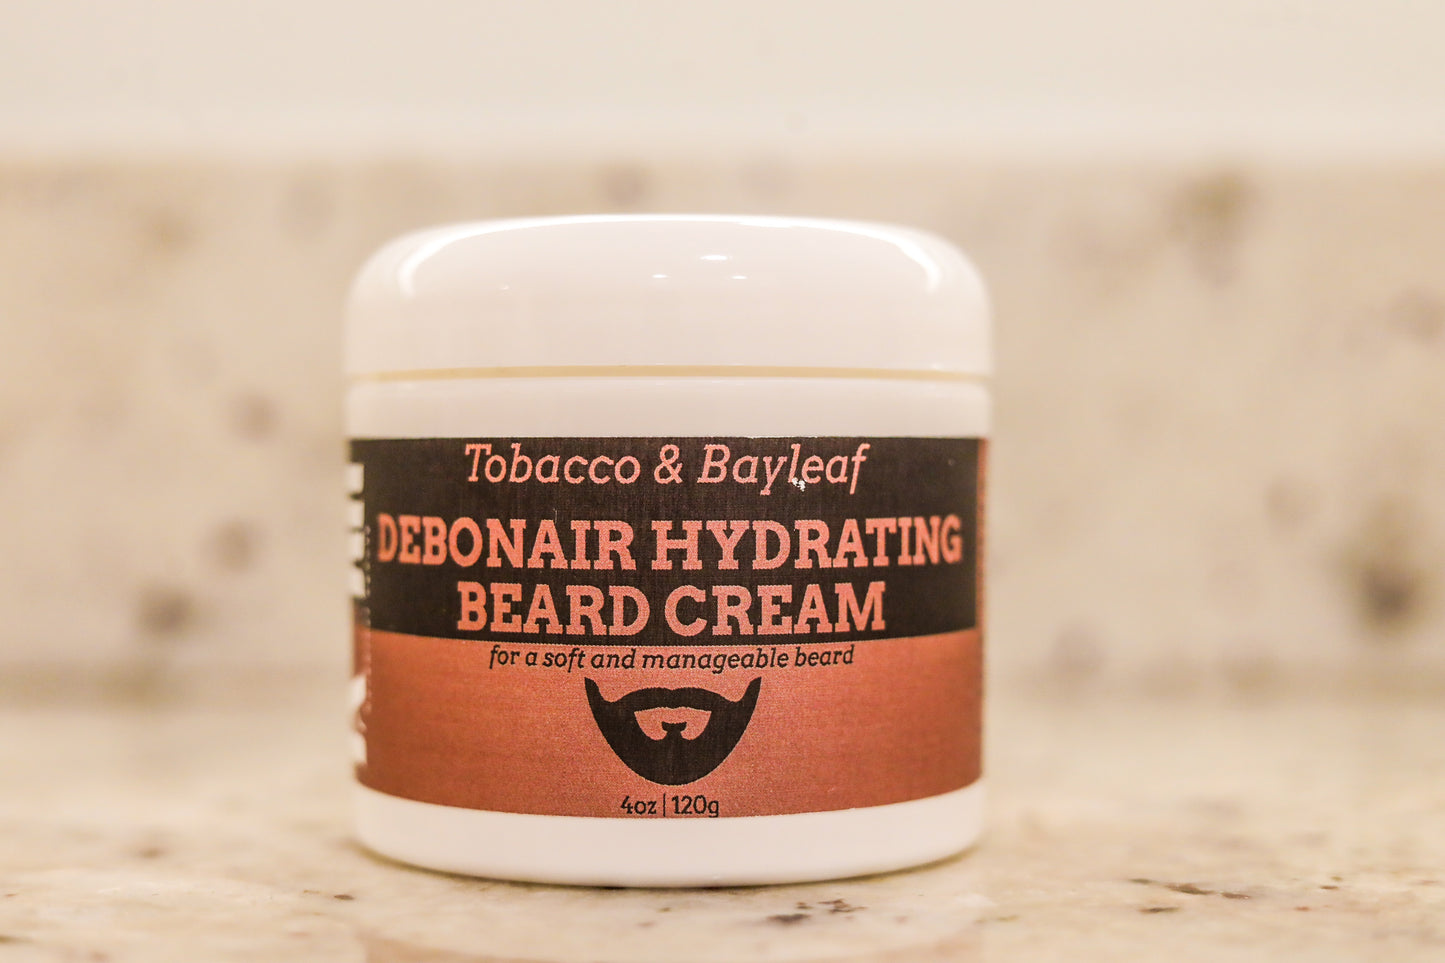 Tobacco & Bayleaf Debonair Hydrating Beard Cream